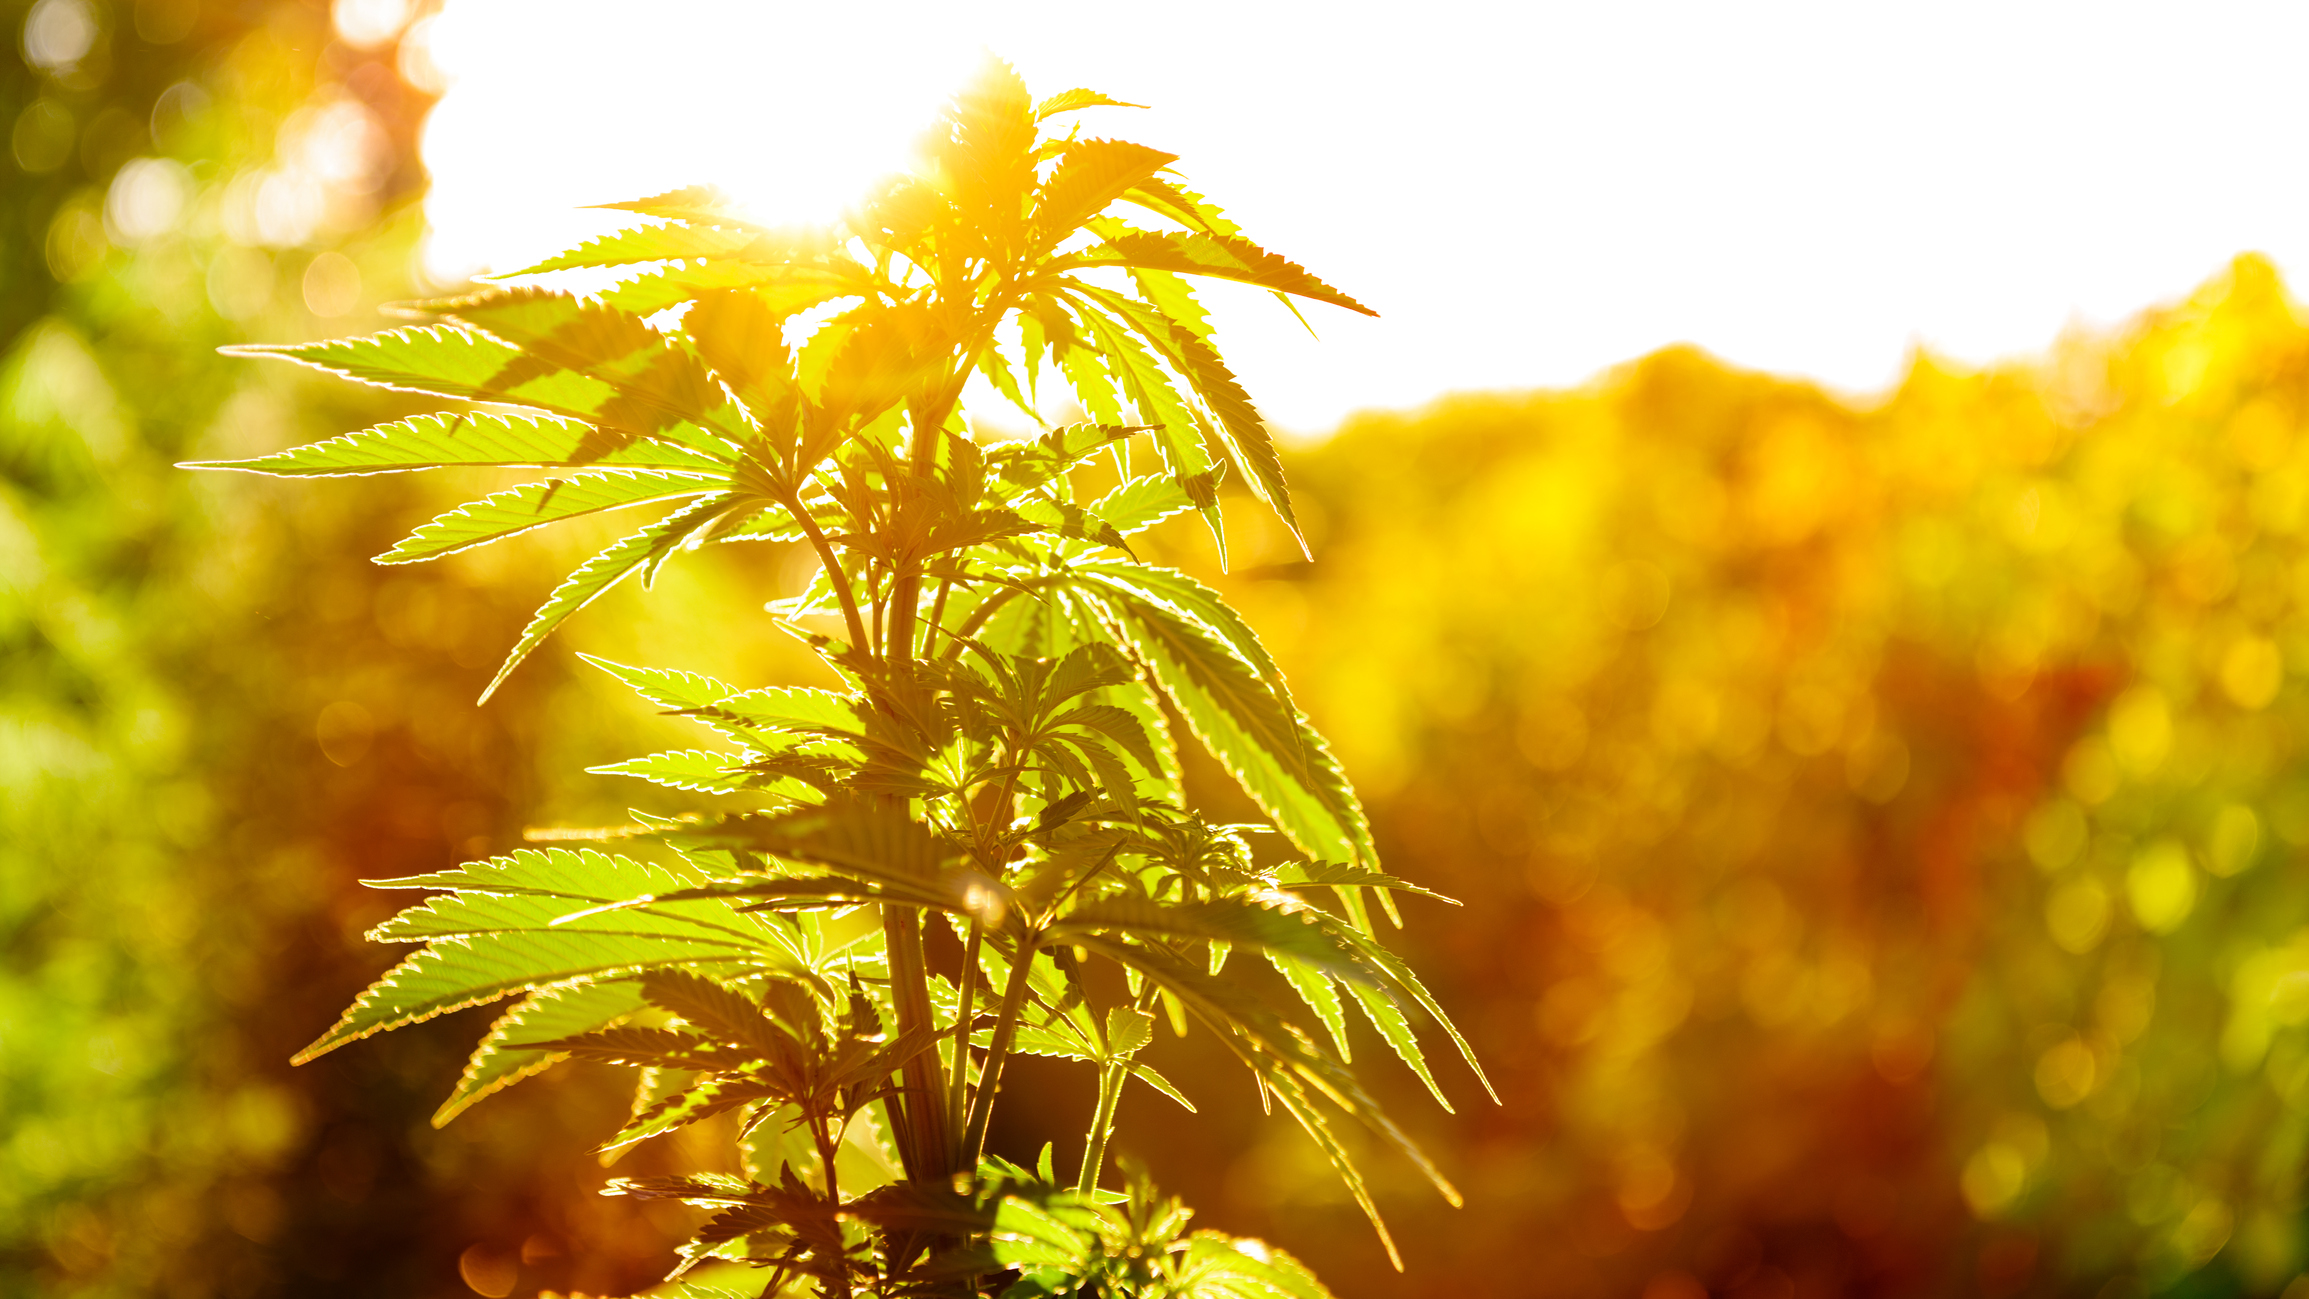 Diese Cannabisaktie hat gerade Geschichte geschrieben (nein, nicht Canopy Growth)